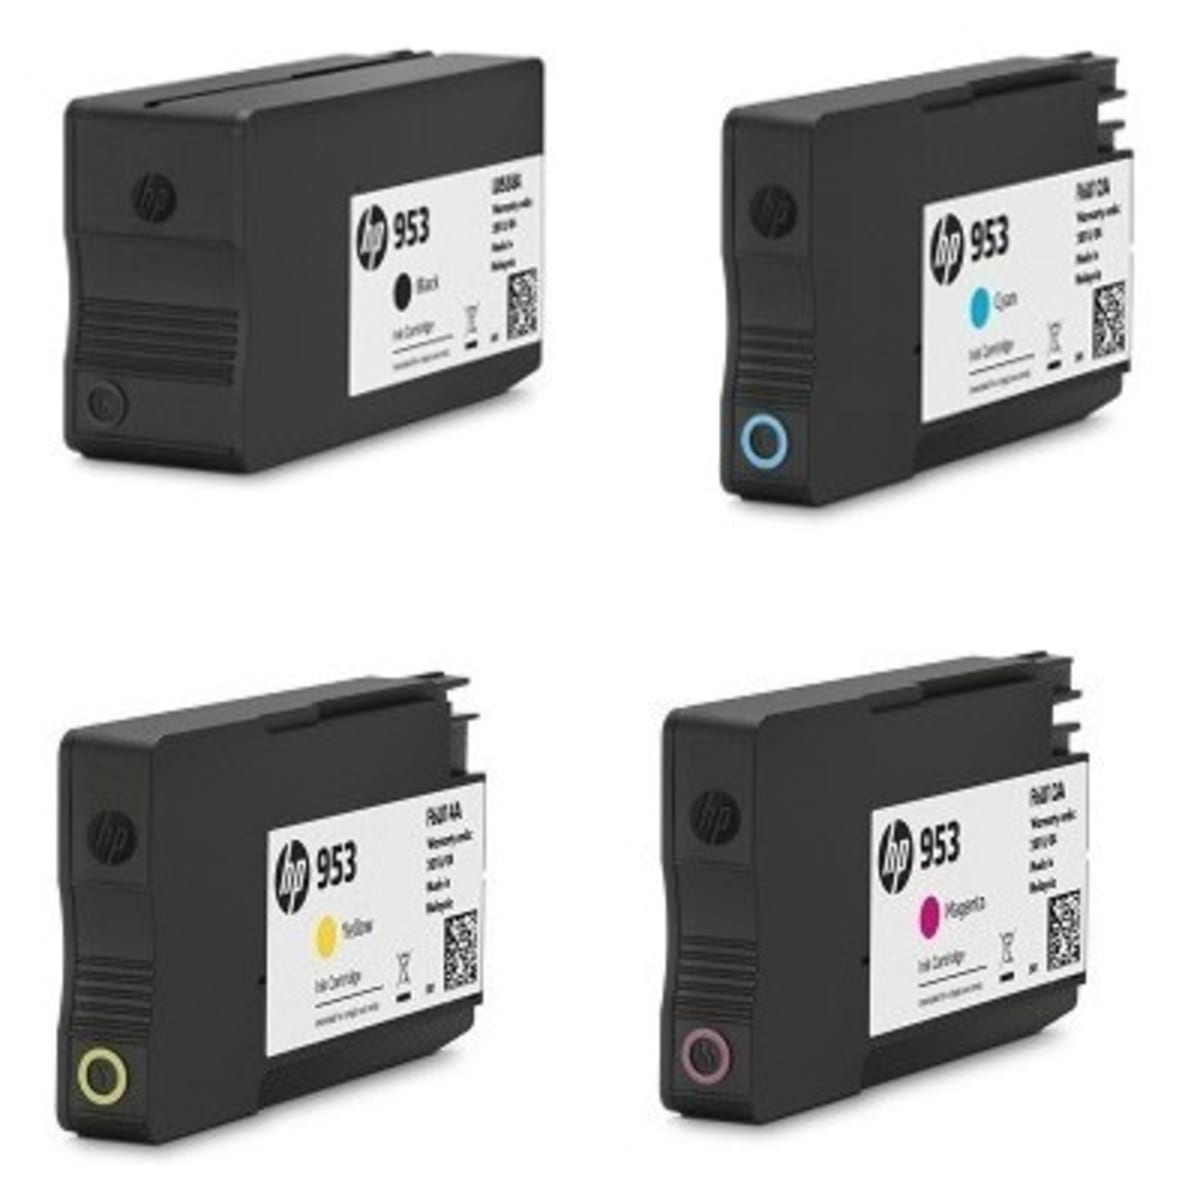 HP 953 Complete Set Ink Cartridges - Black - Cyan - Magenta